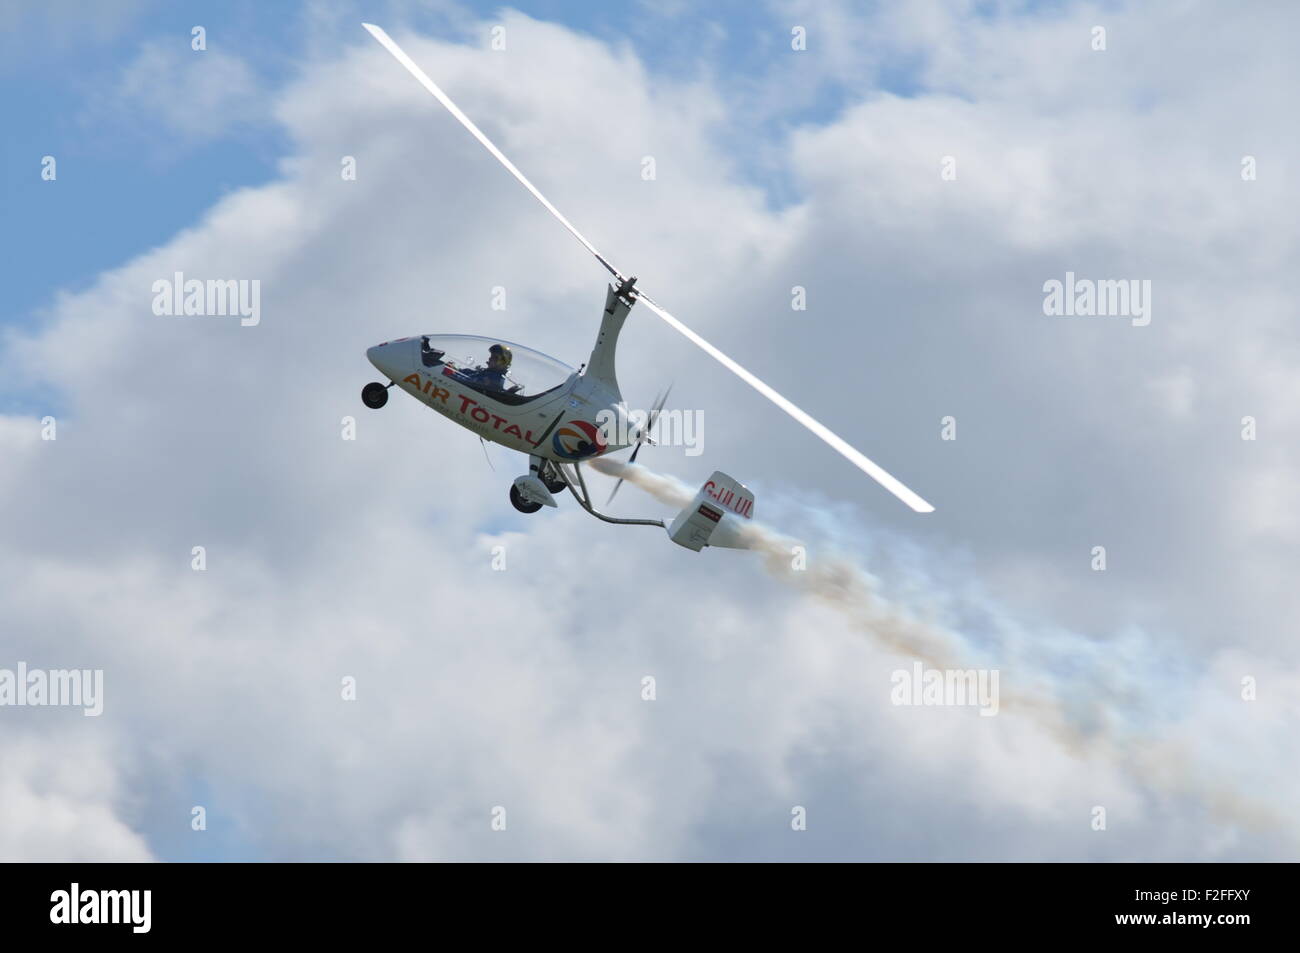 L'autogyre Calidus volant à un meeting aérien avec la fumée blanche Banque D'Images